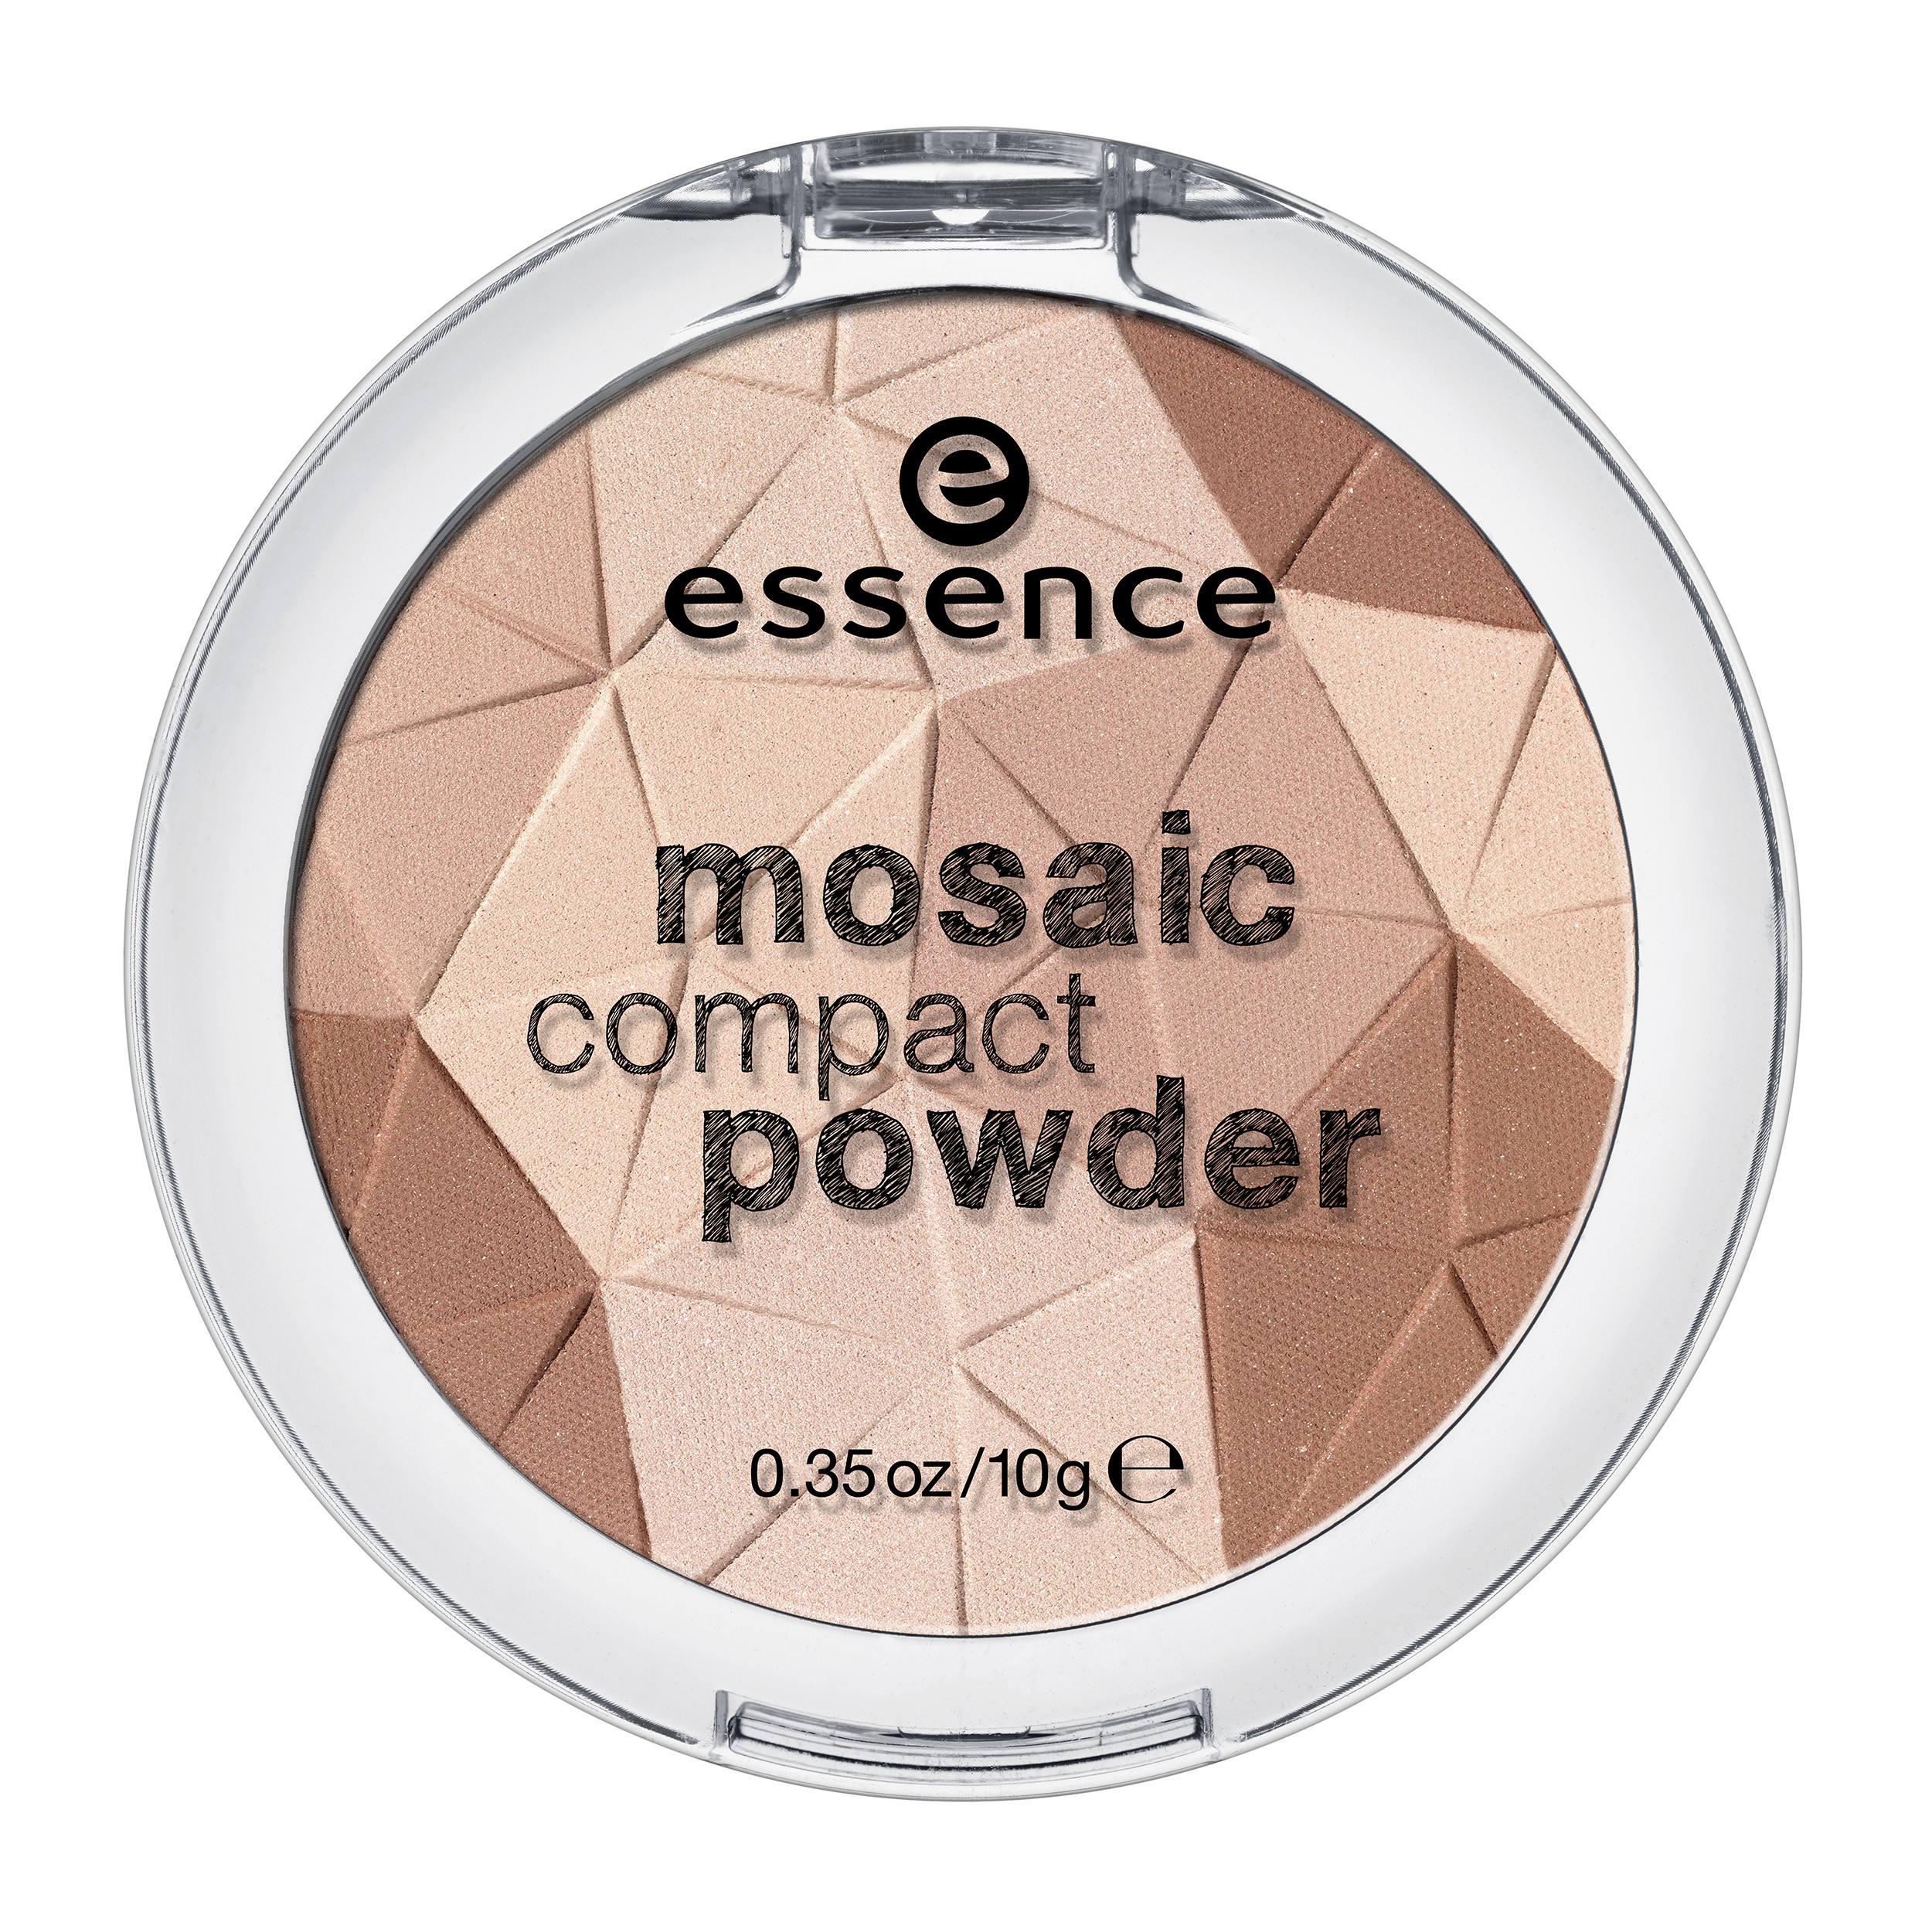 Puder - Mosaic Compact Powder